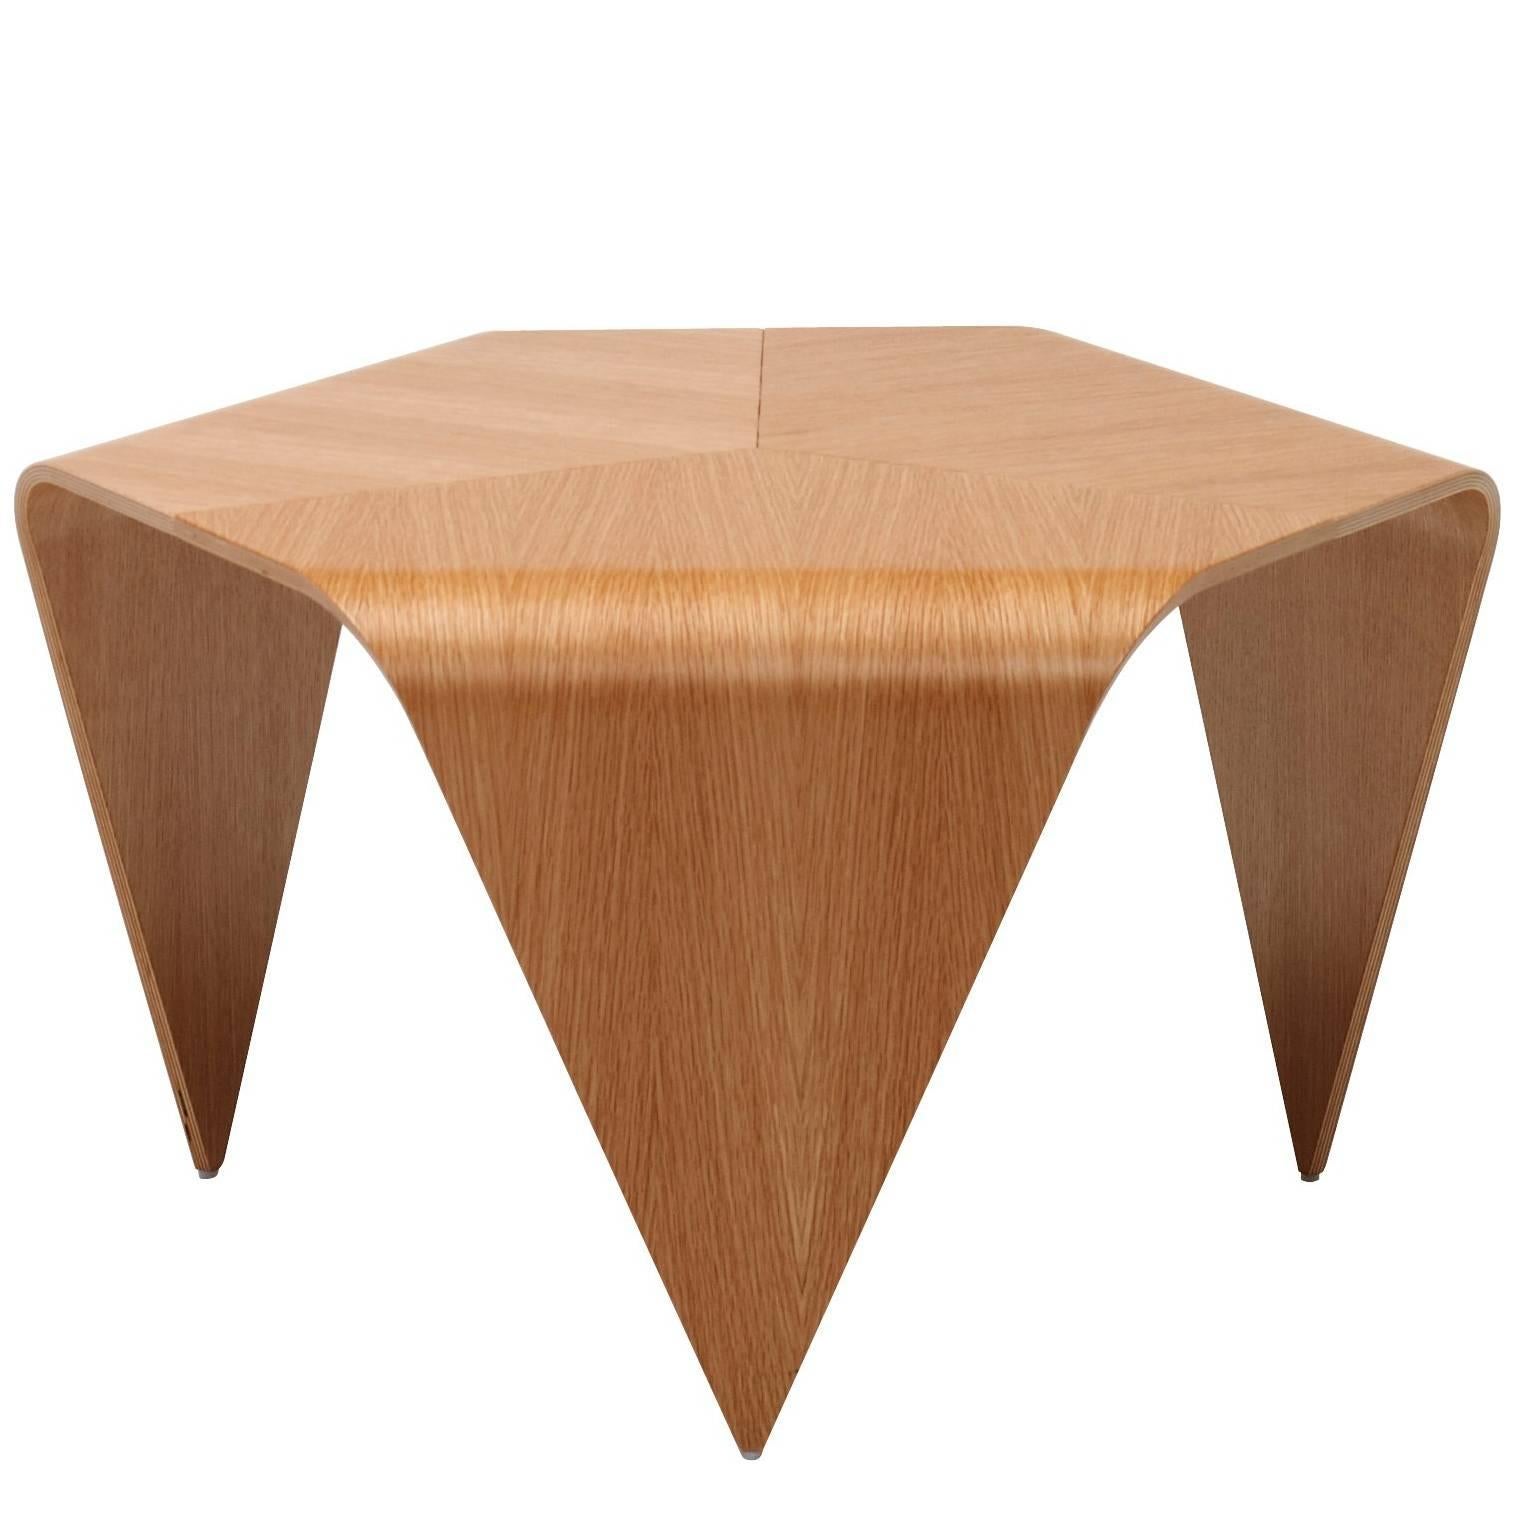 Authentic Trienna Table with Oak Veneer by Ilmari Tapiovaara & Artek For Sale